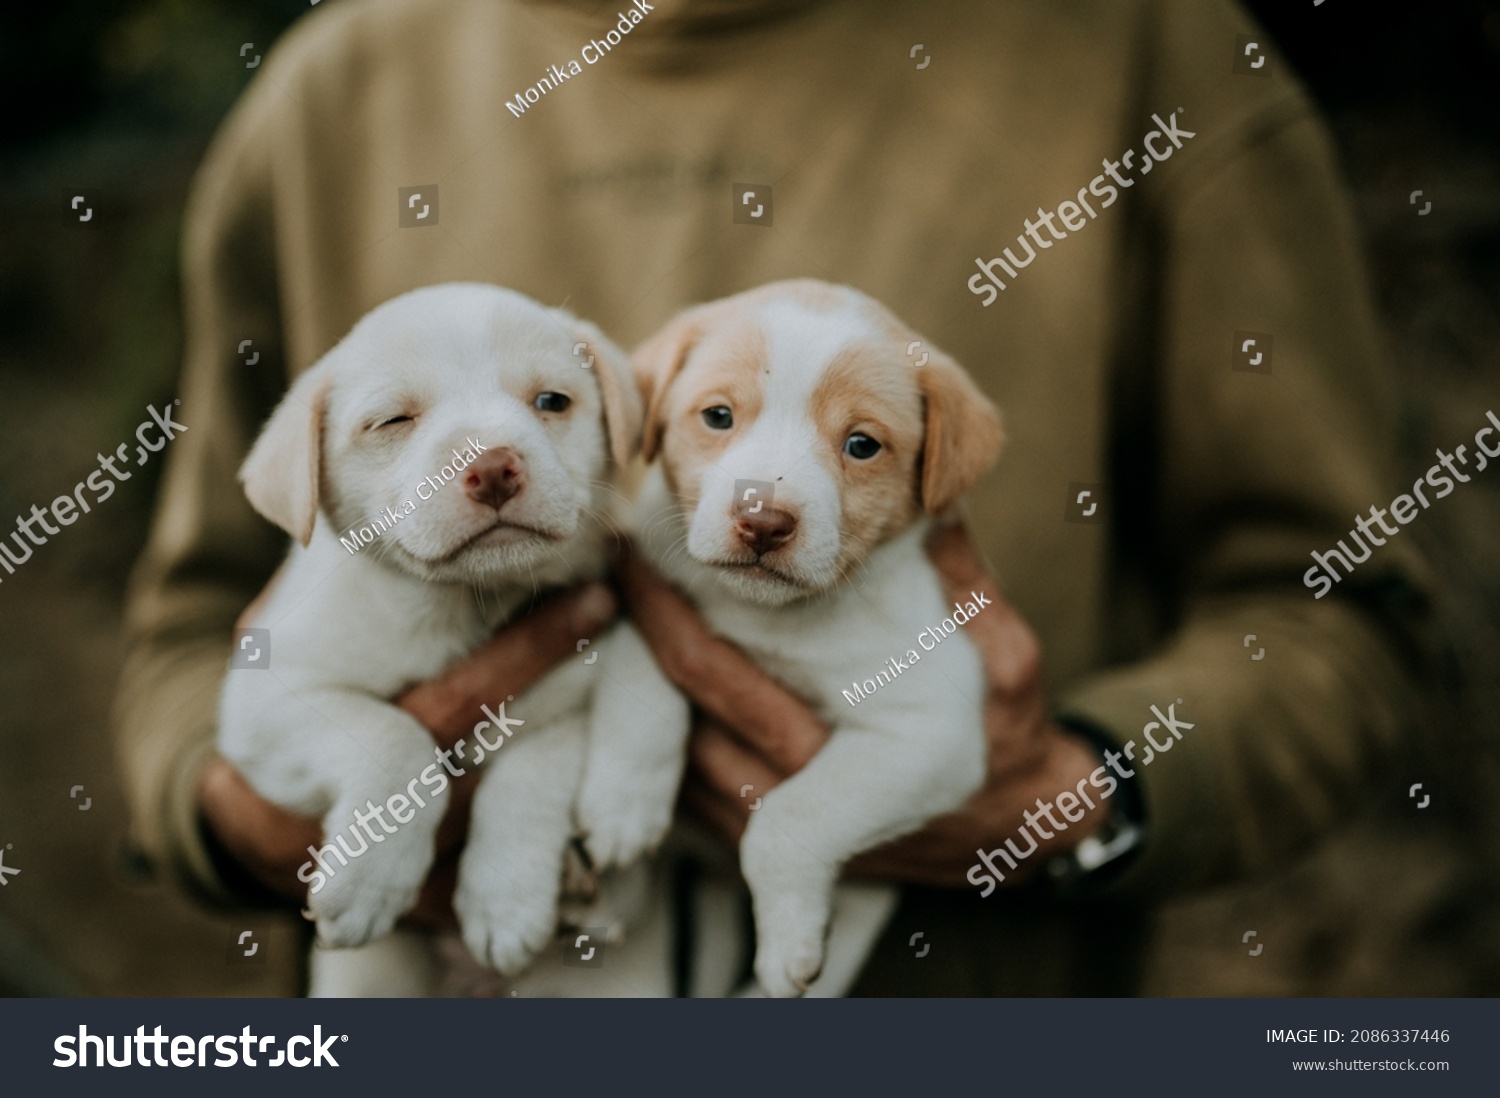 犬写真素材 Shutterstock